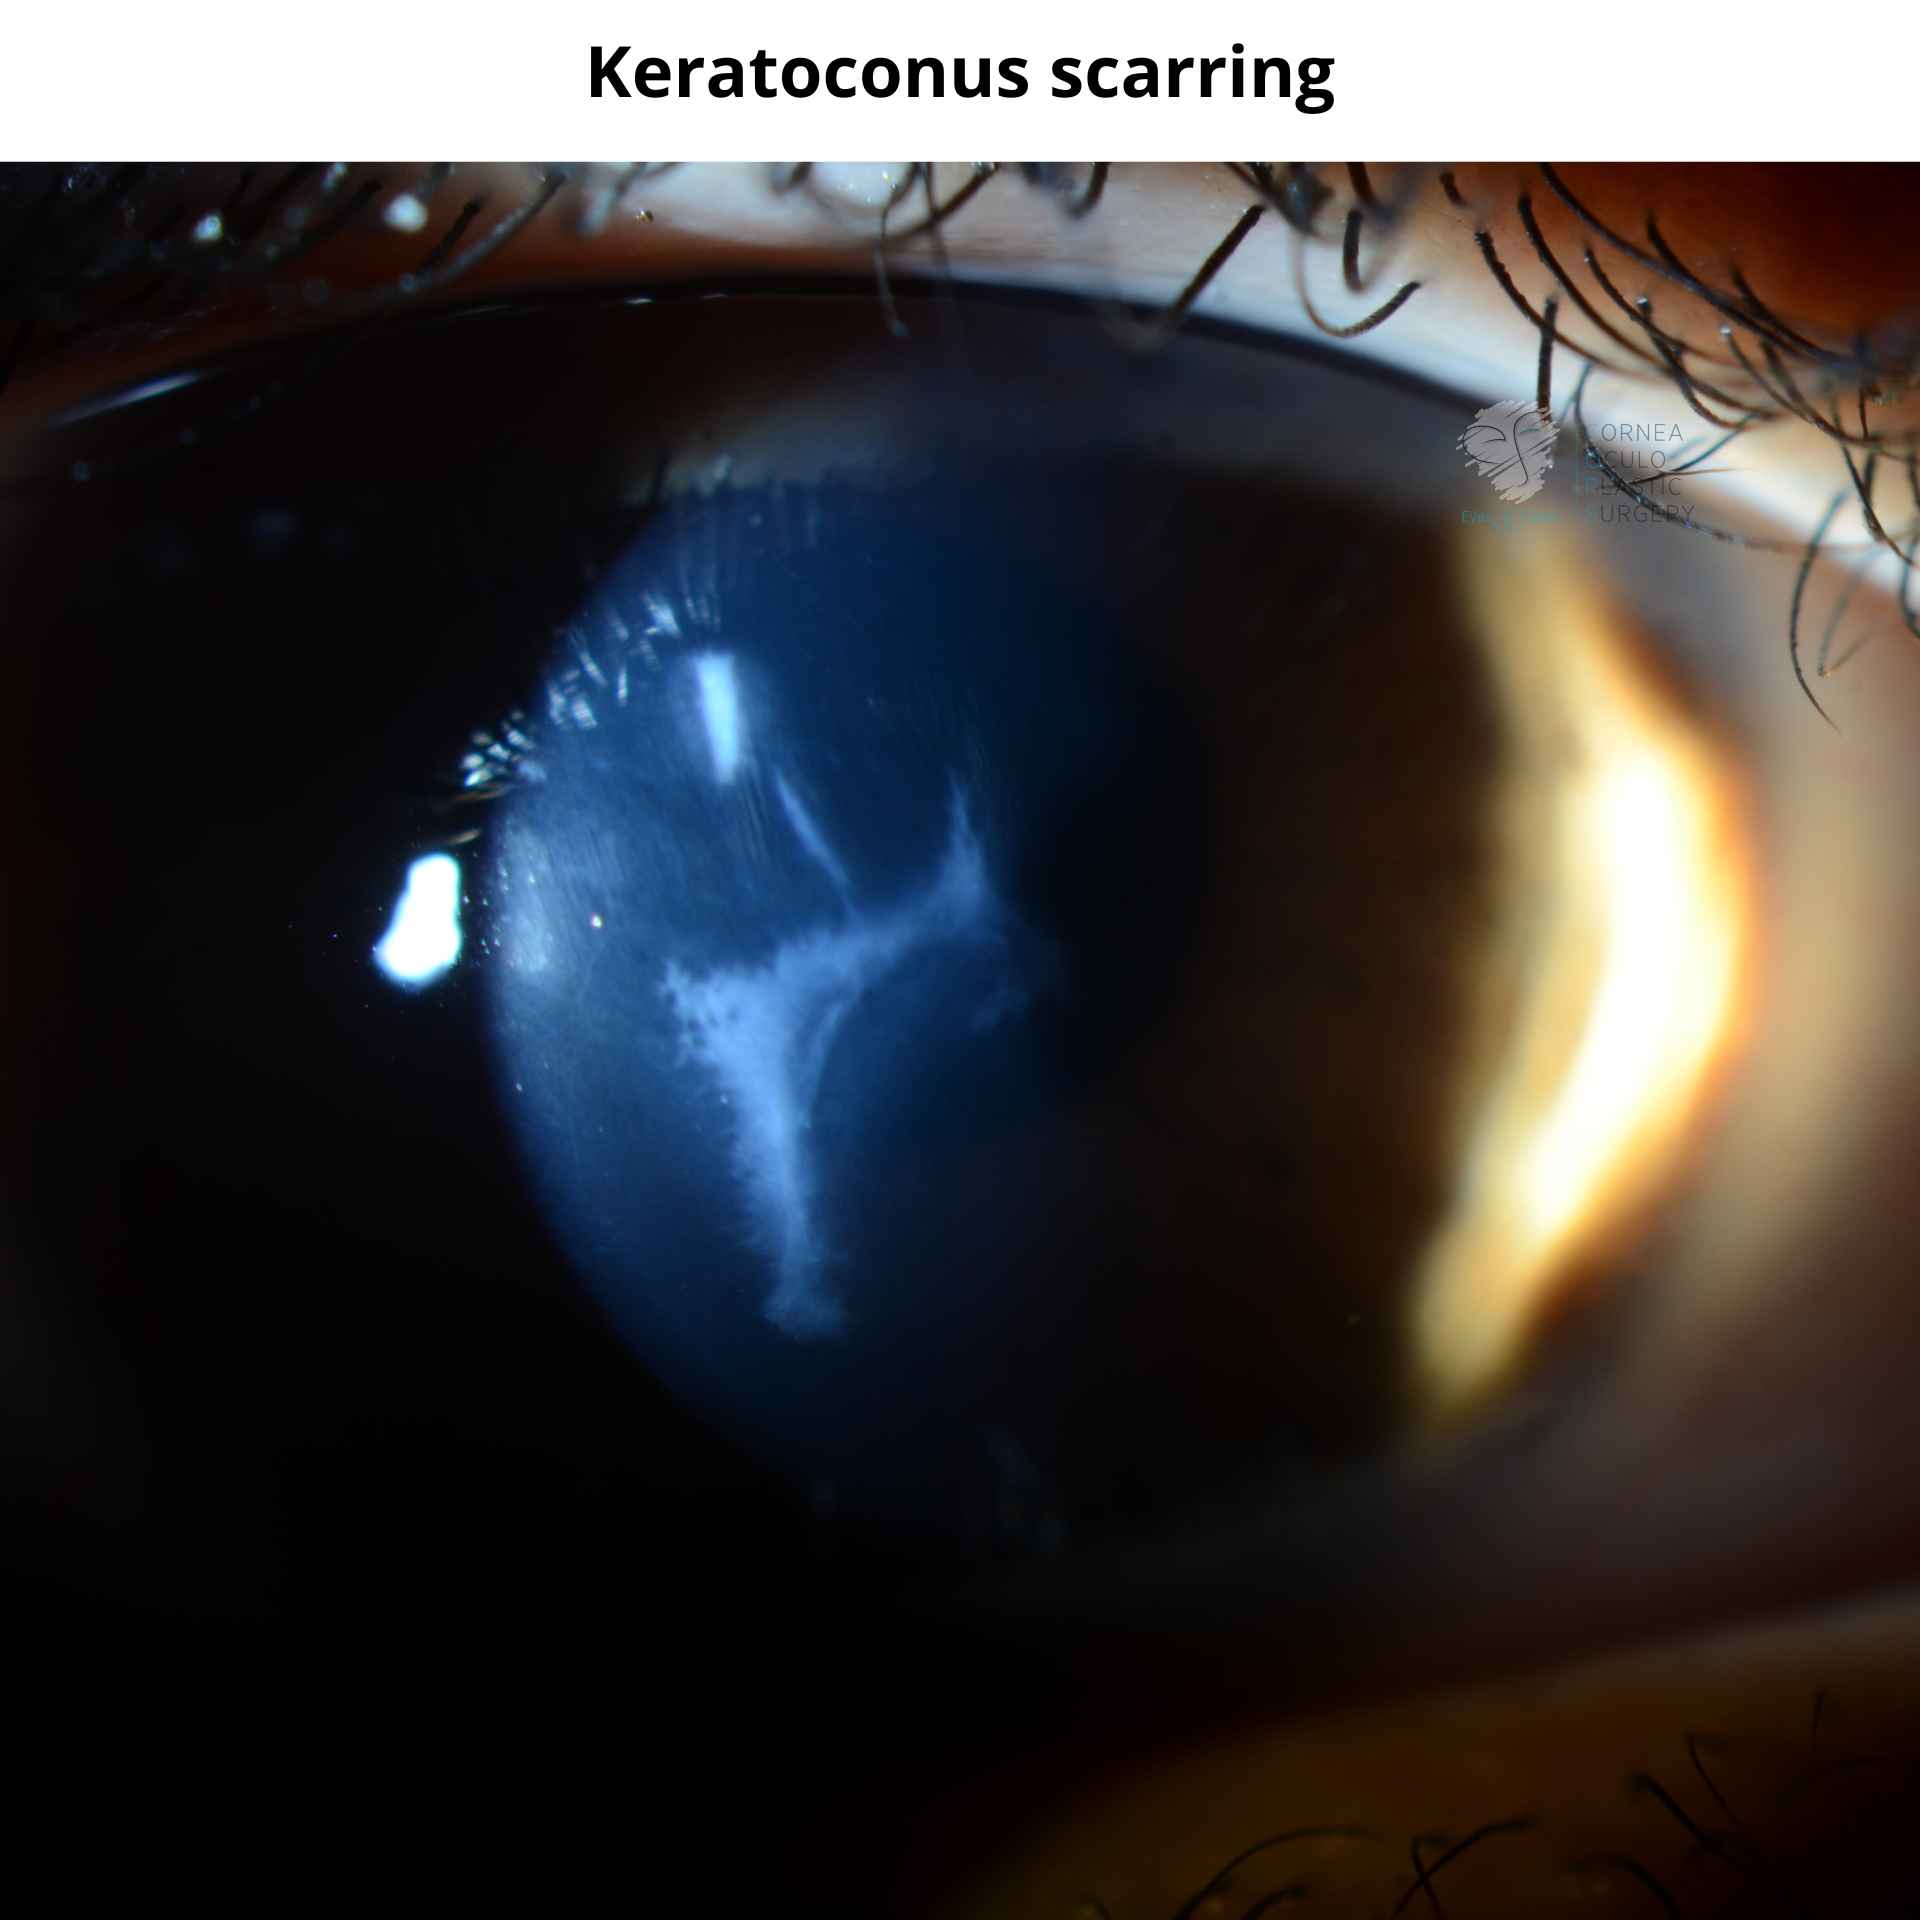 Keratoconus scarring